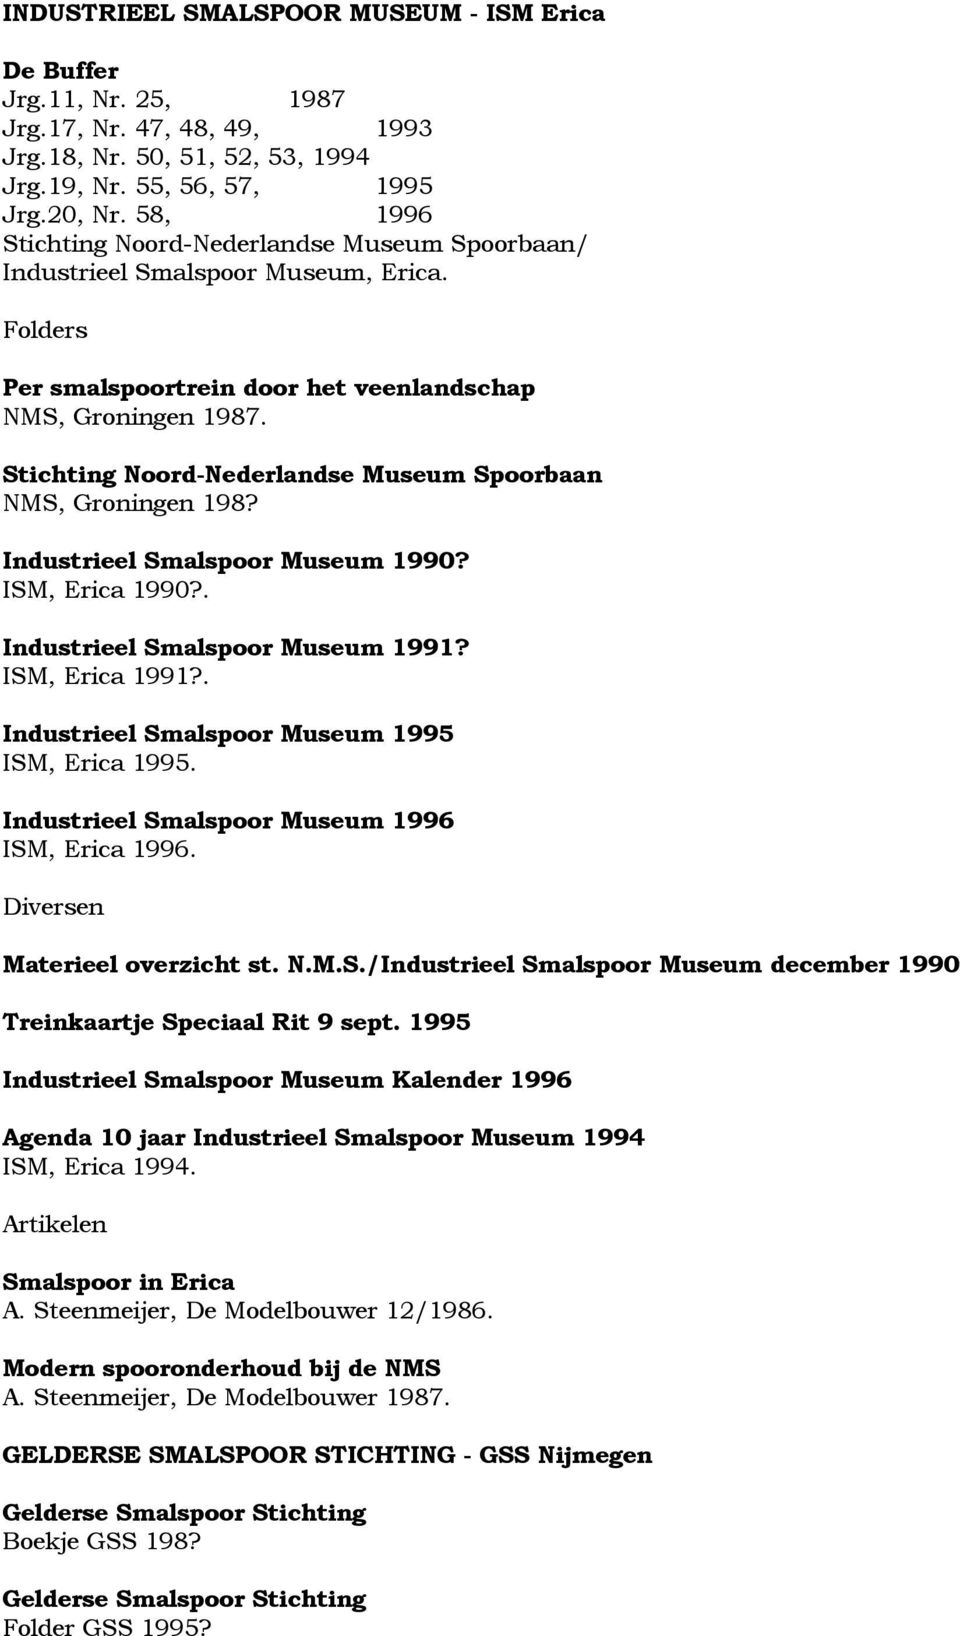 Stichting Noord-Nederlandse Museum Spoorbaan NMS, Groningen 198? Industrieel Smalspoor Museum 1990? ISM, Erica 1990?. Industrieel Smalspoor Museum 1991? ISM, Erica 1991?